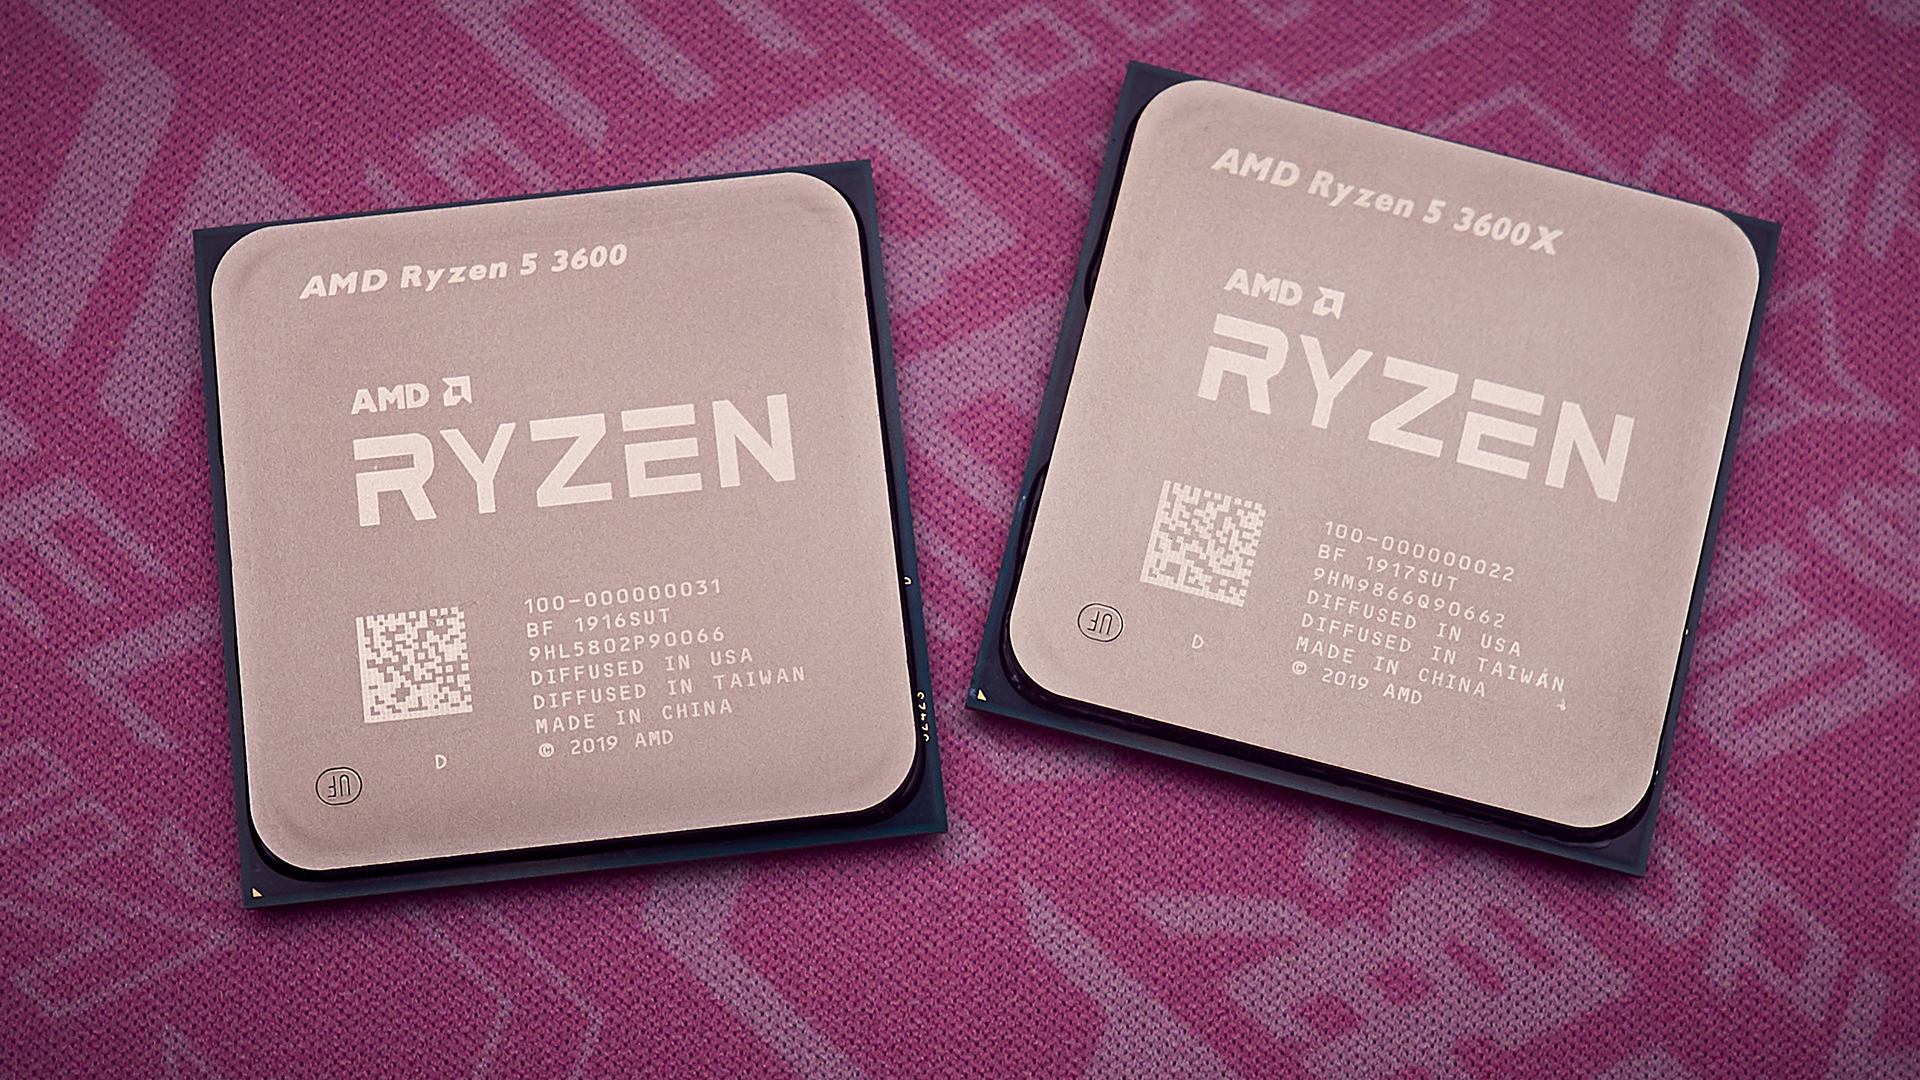 AMD Ryzen 5 3600X & Ryzen 5 3600 review | WASD